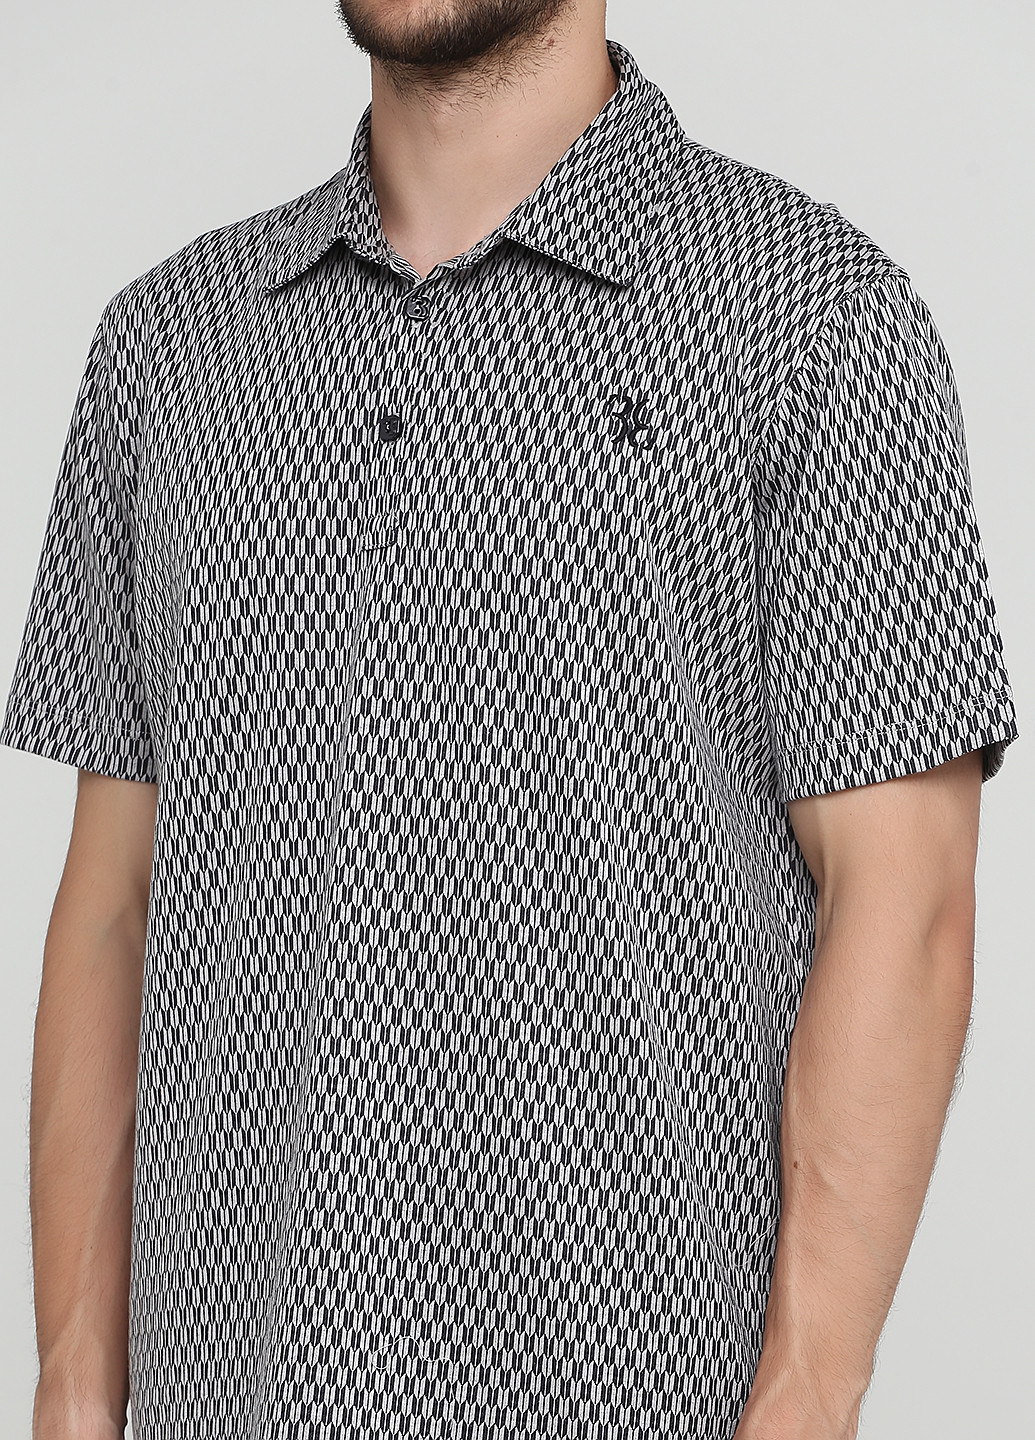 Серая футболка-поло для мужчин Billionaire с абстрактным узором